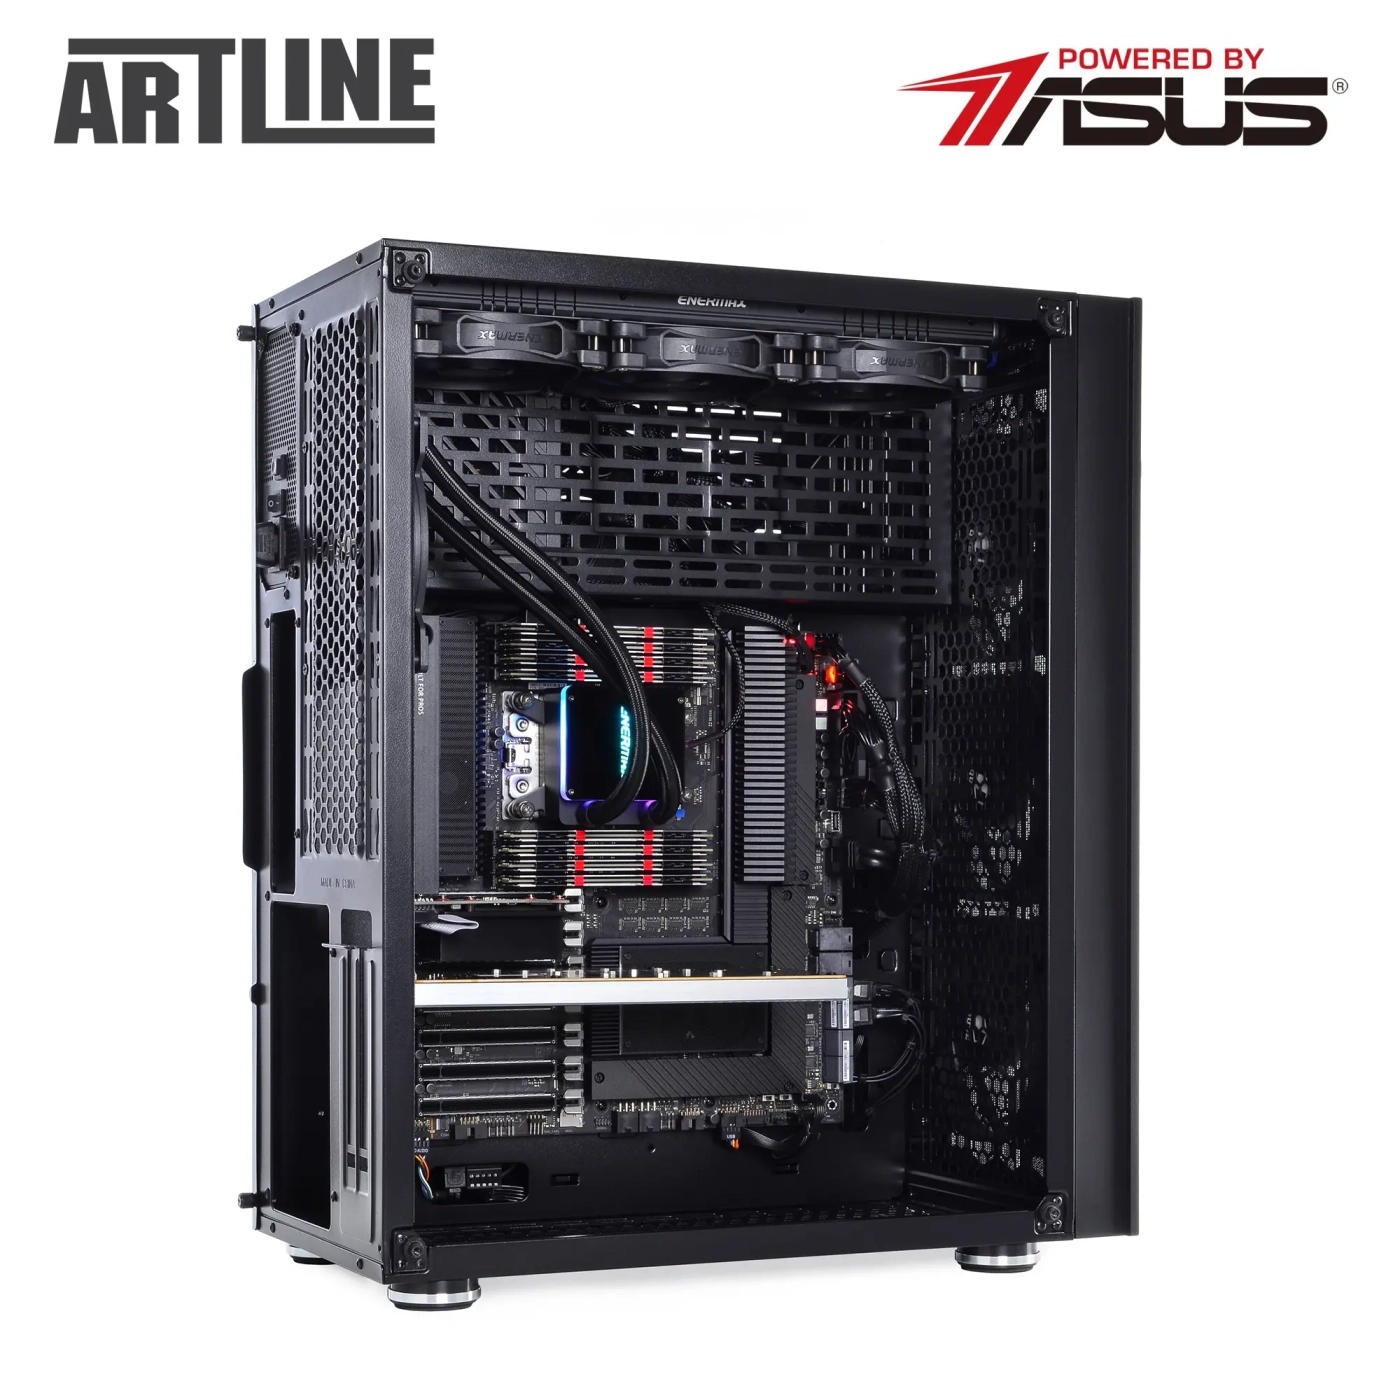 Купить Сервер ARTLINE Business T85v09 - фото 10